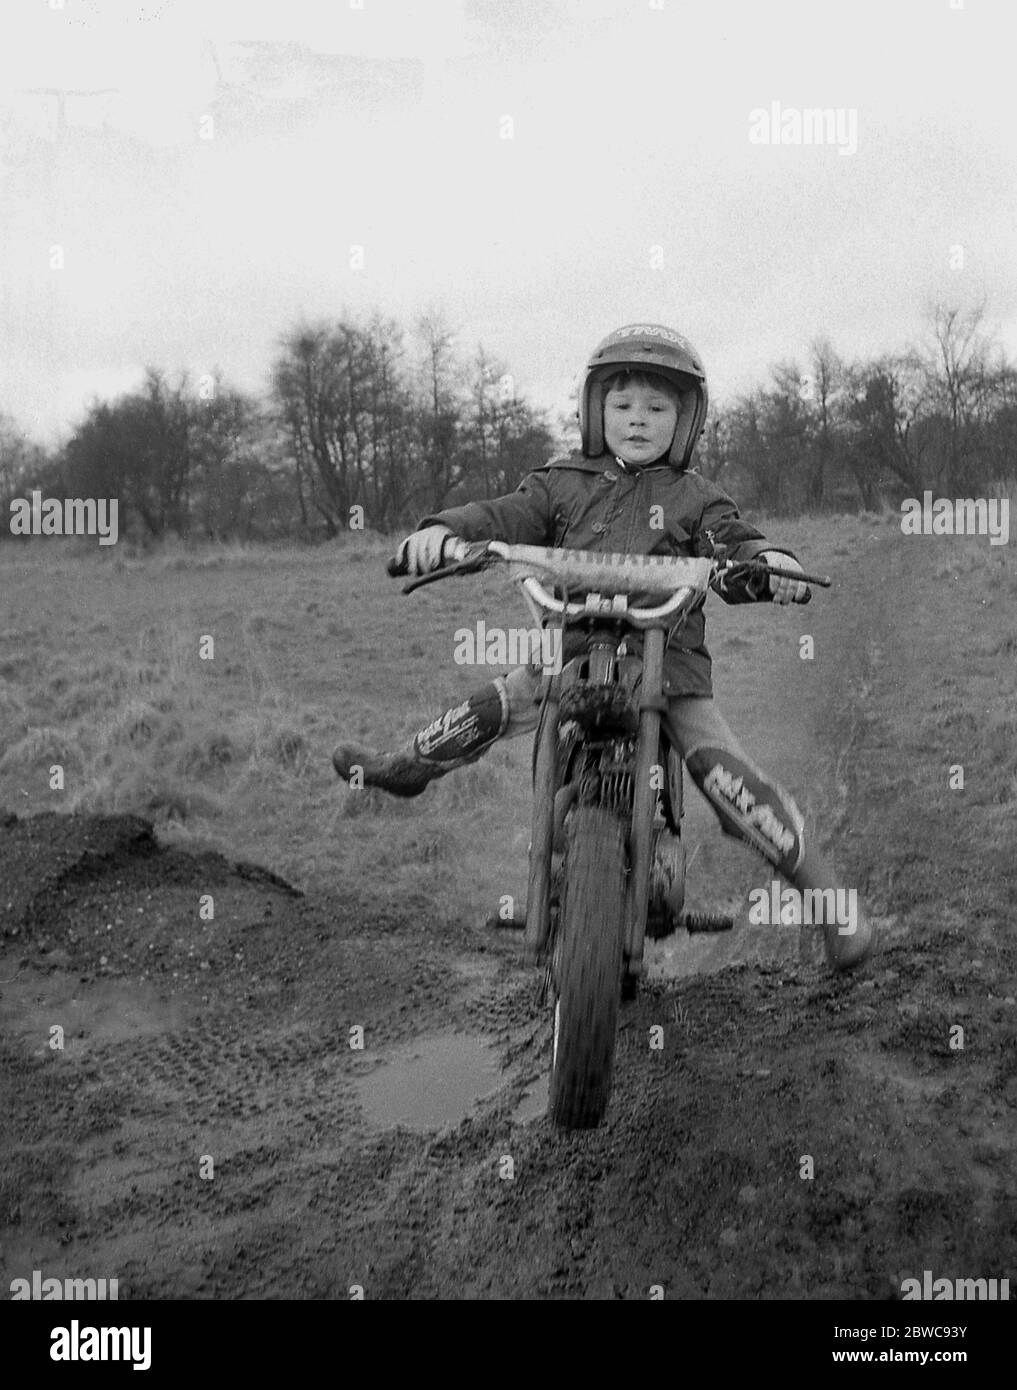 "Starting Young", ein mutiger Junge, vielleicht erst 6 Jahre alt, auf einem Motorrad-Probelauf auf einem Feld über einem Hügel auf einer feuchten schlammigen Strecke, England, Großbritannien, 1980er Jahre. Trials Reiten ist eine beliebte Teilnahme Motorradsport und junge Menschen sind ermutigt, teilzunehmen. Stockfoto